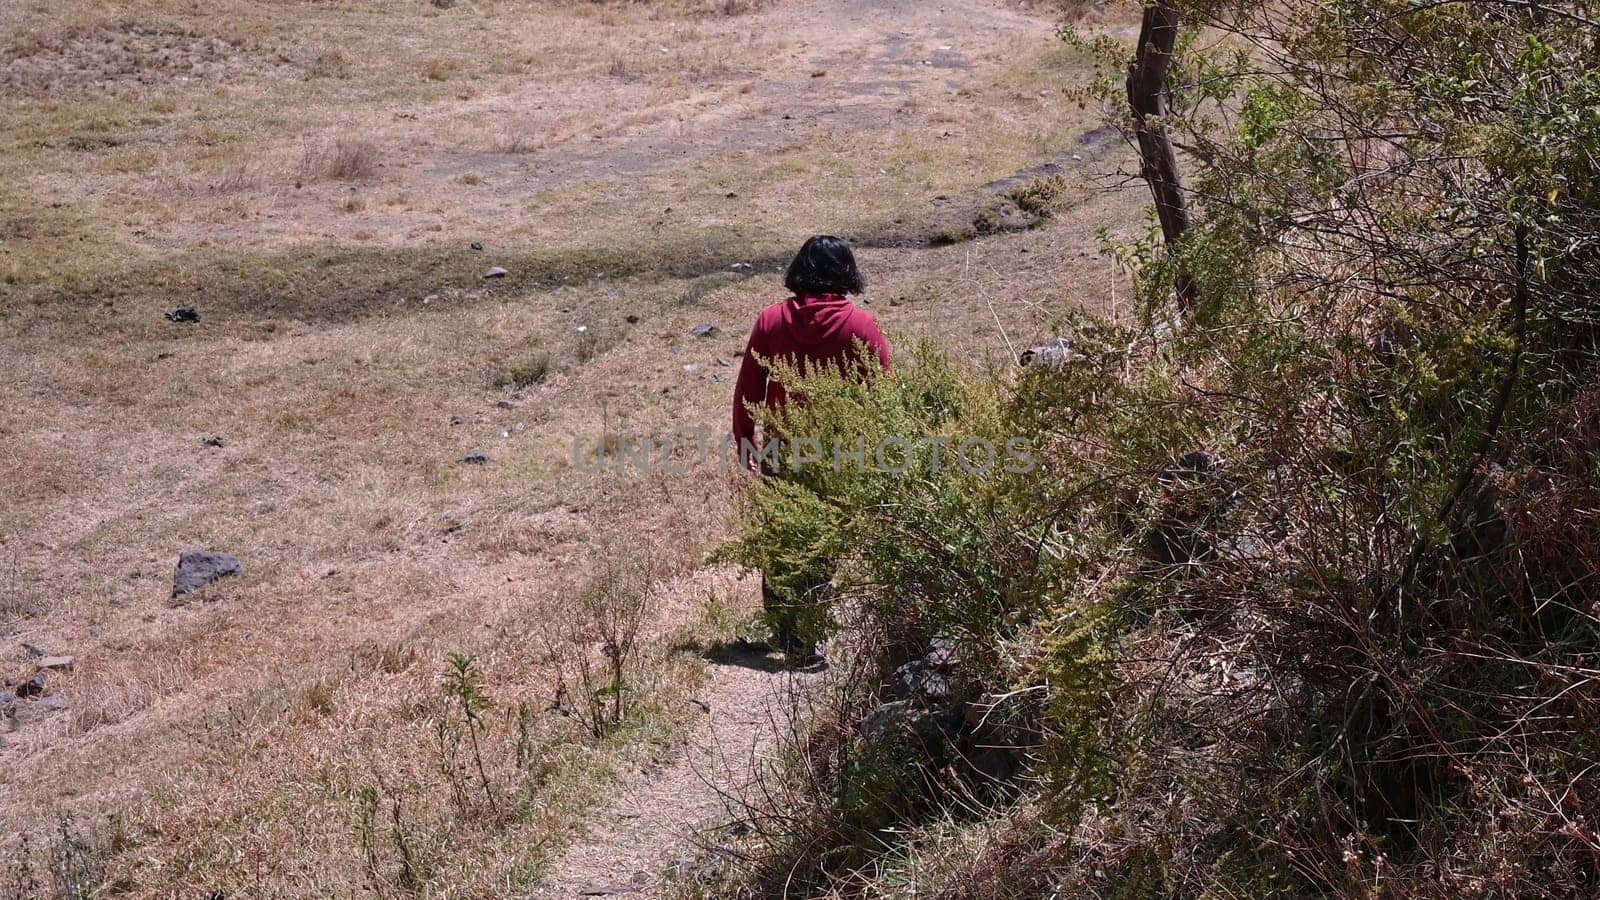 A man walking through the field